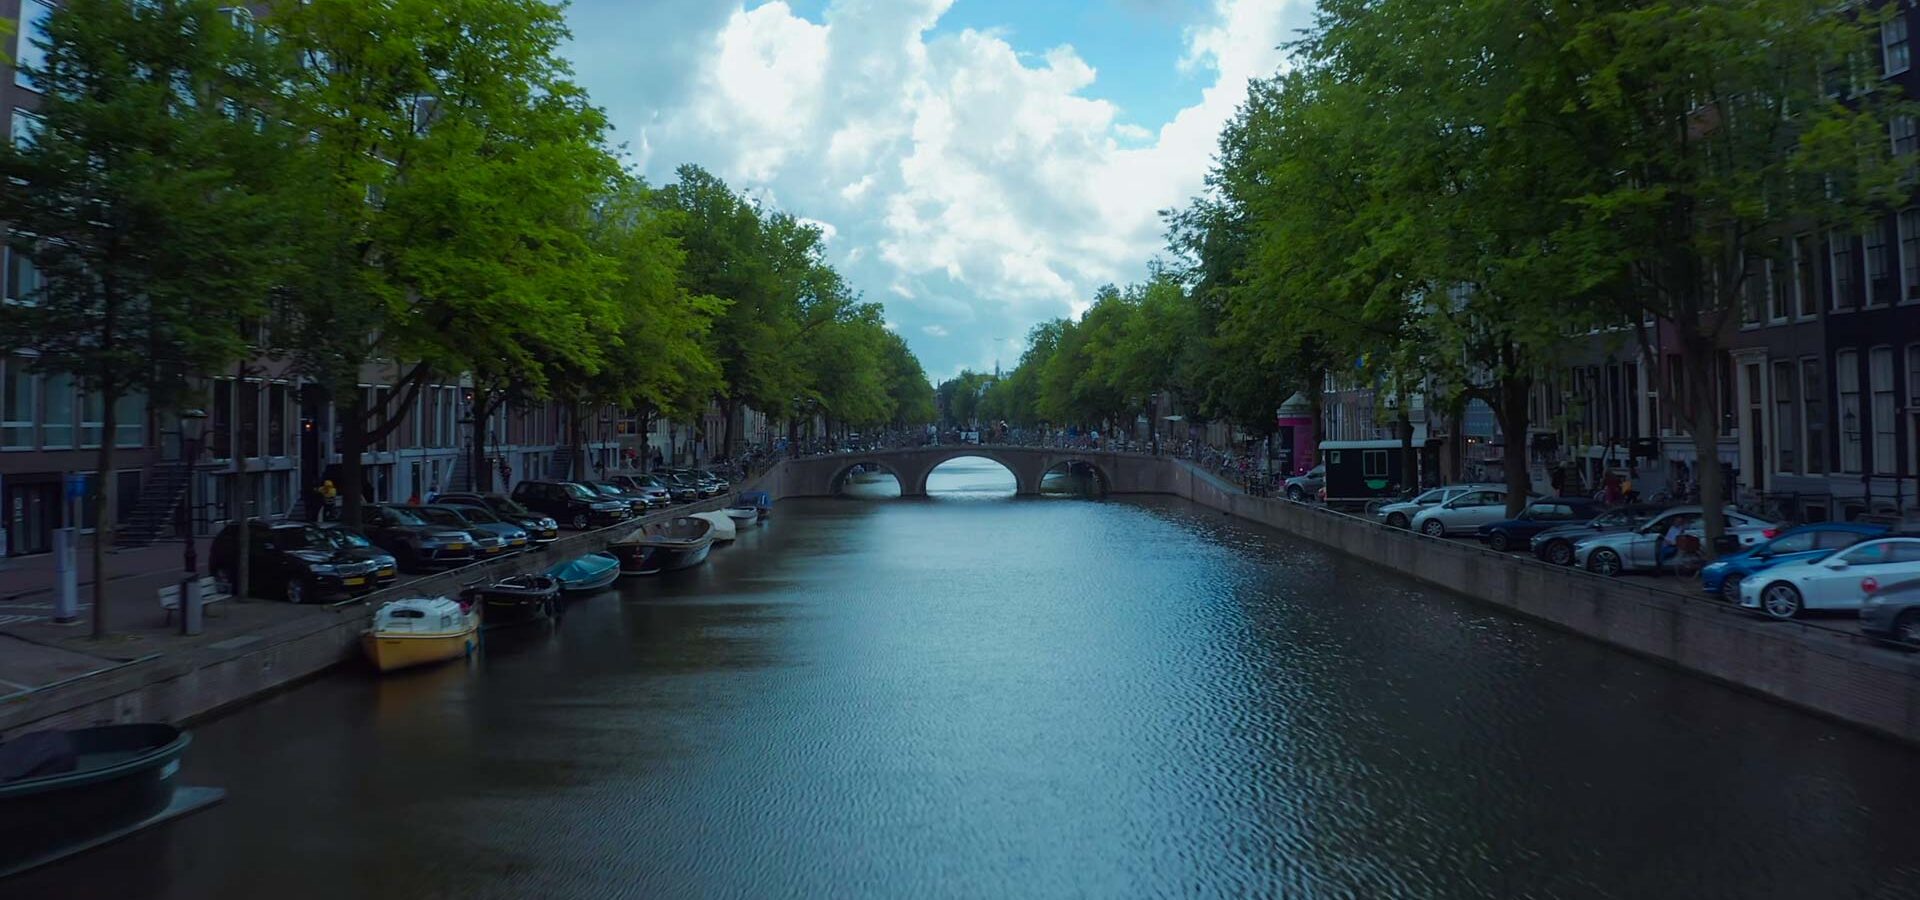 Principaux sites à visiter à Amsterdam, Pays-Bas